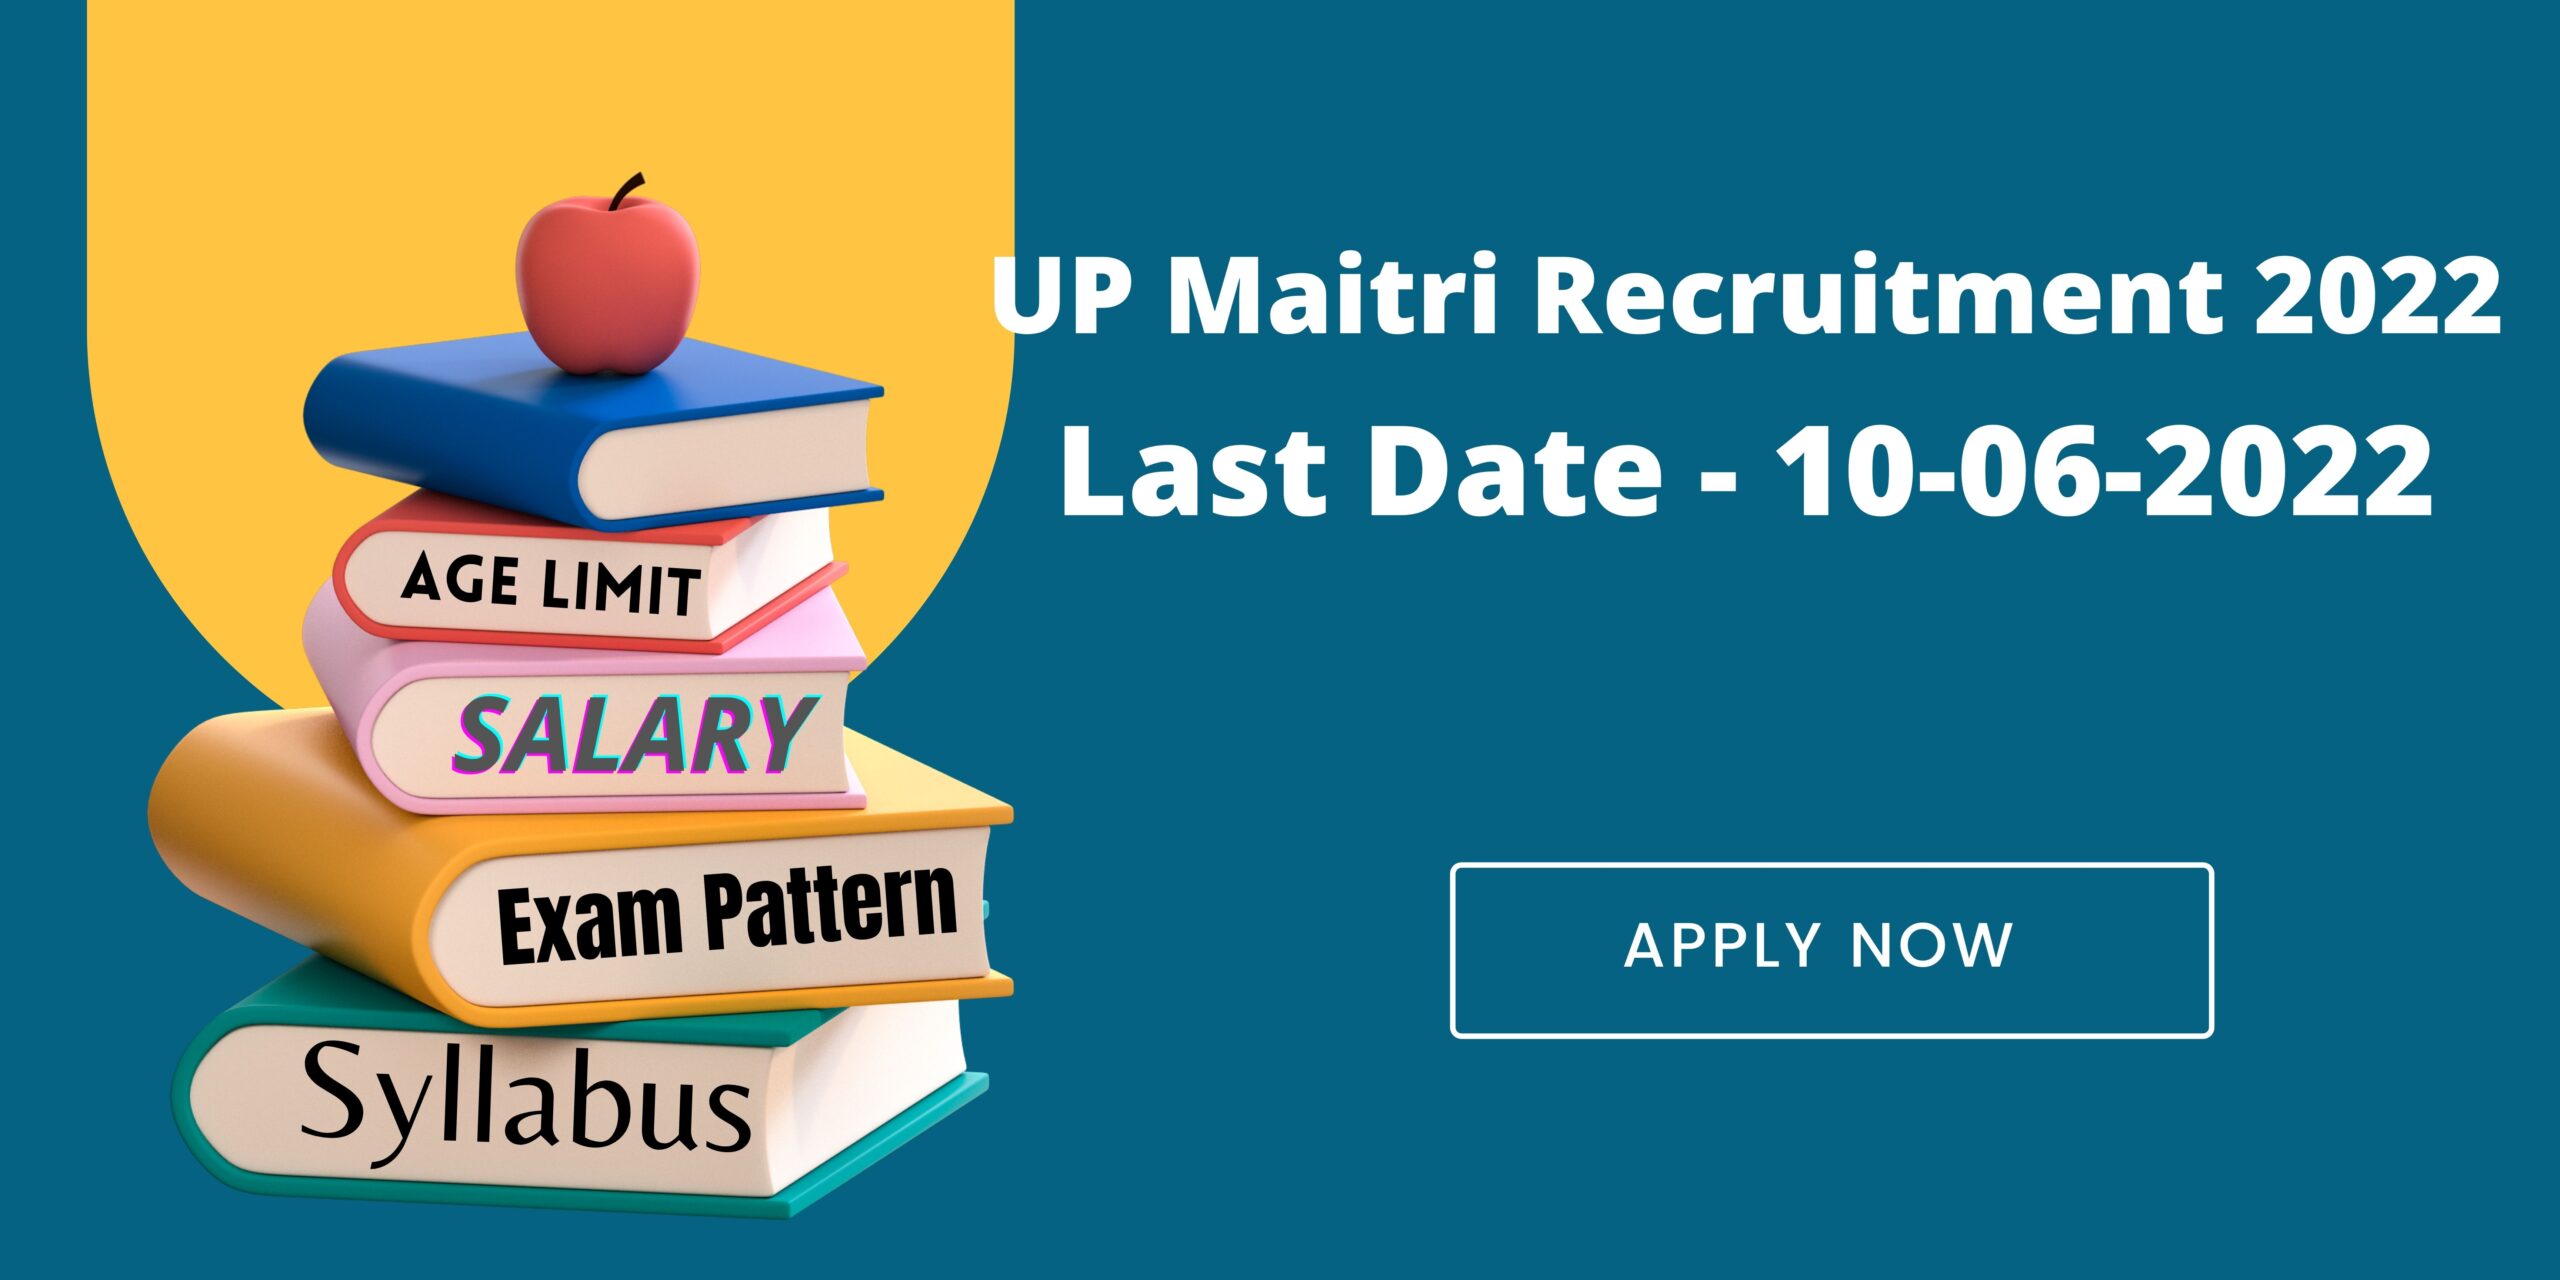 UP Maitri Recruitment 2022